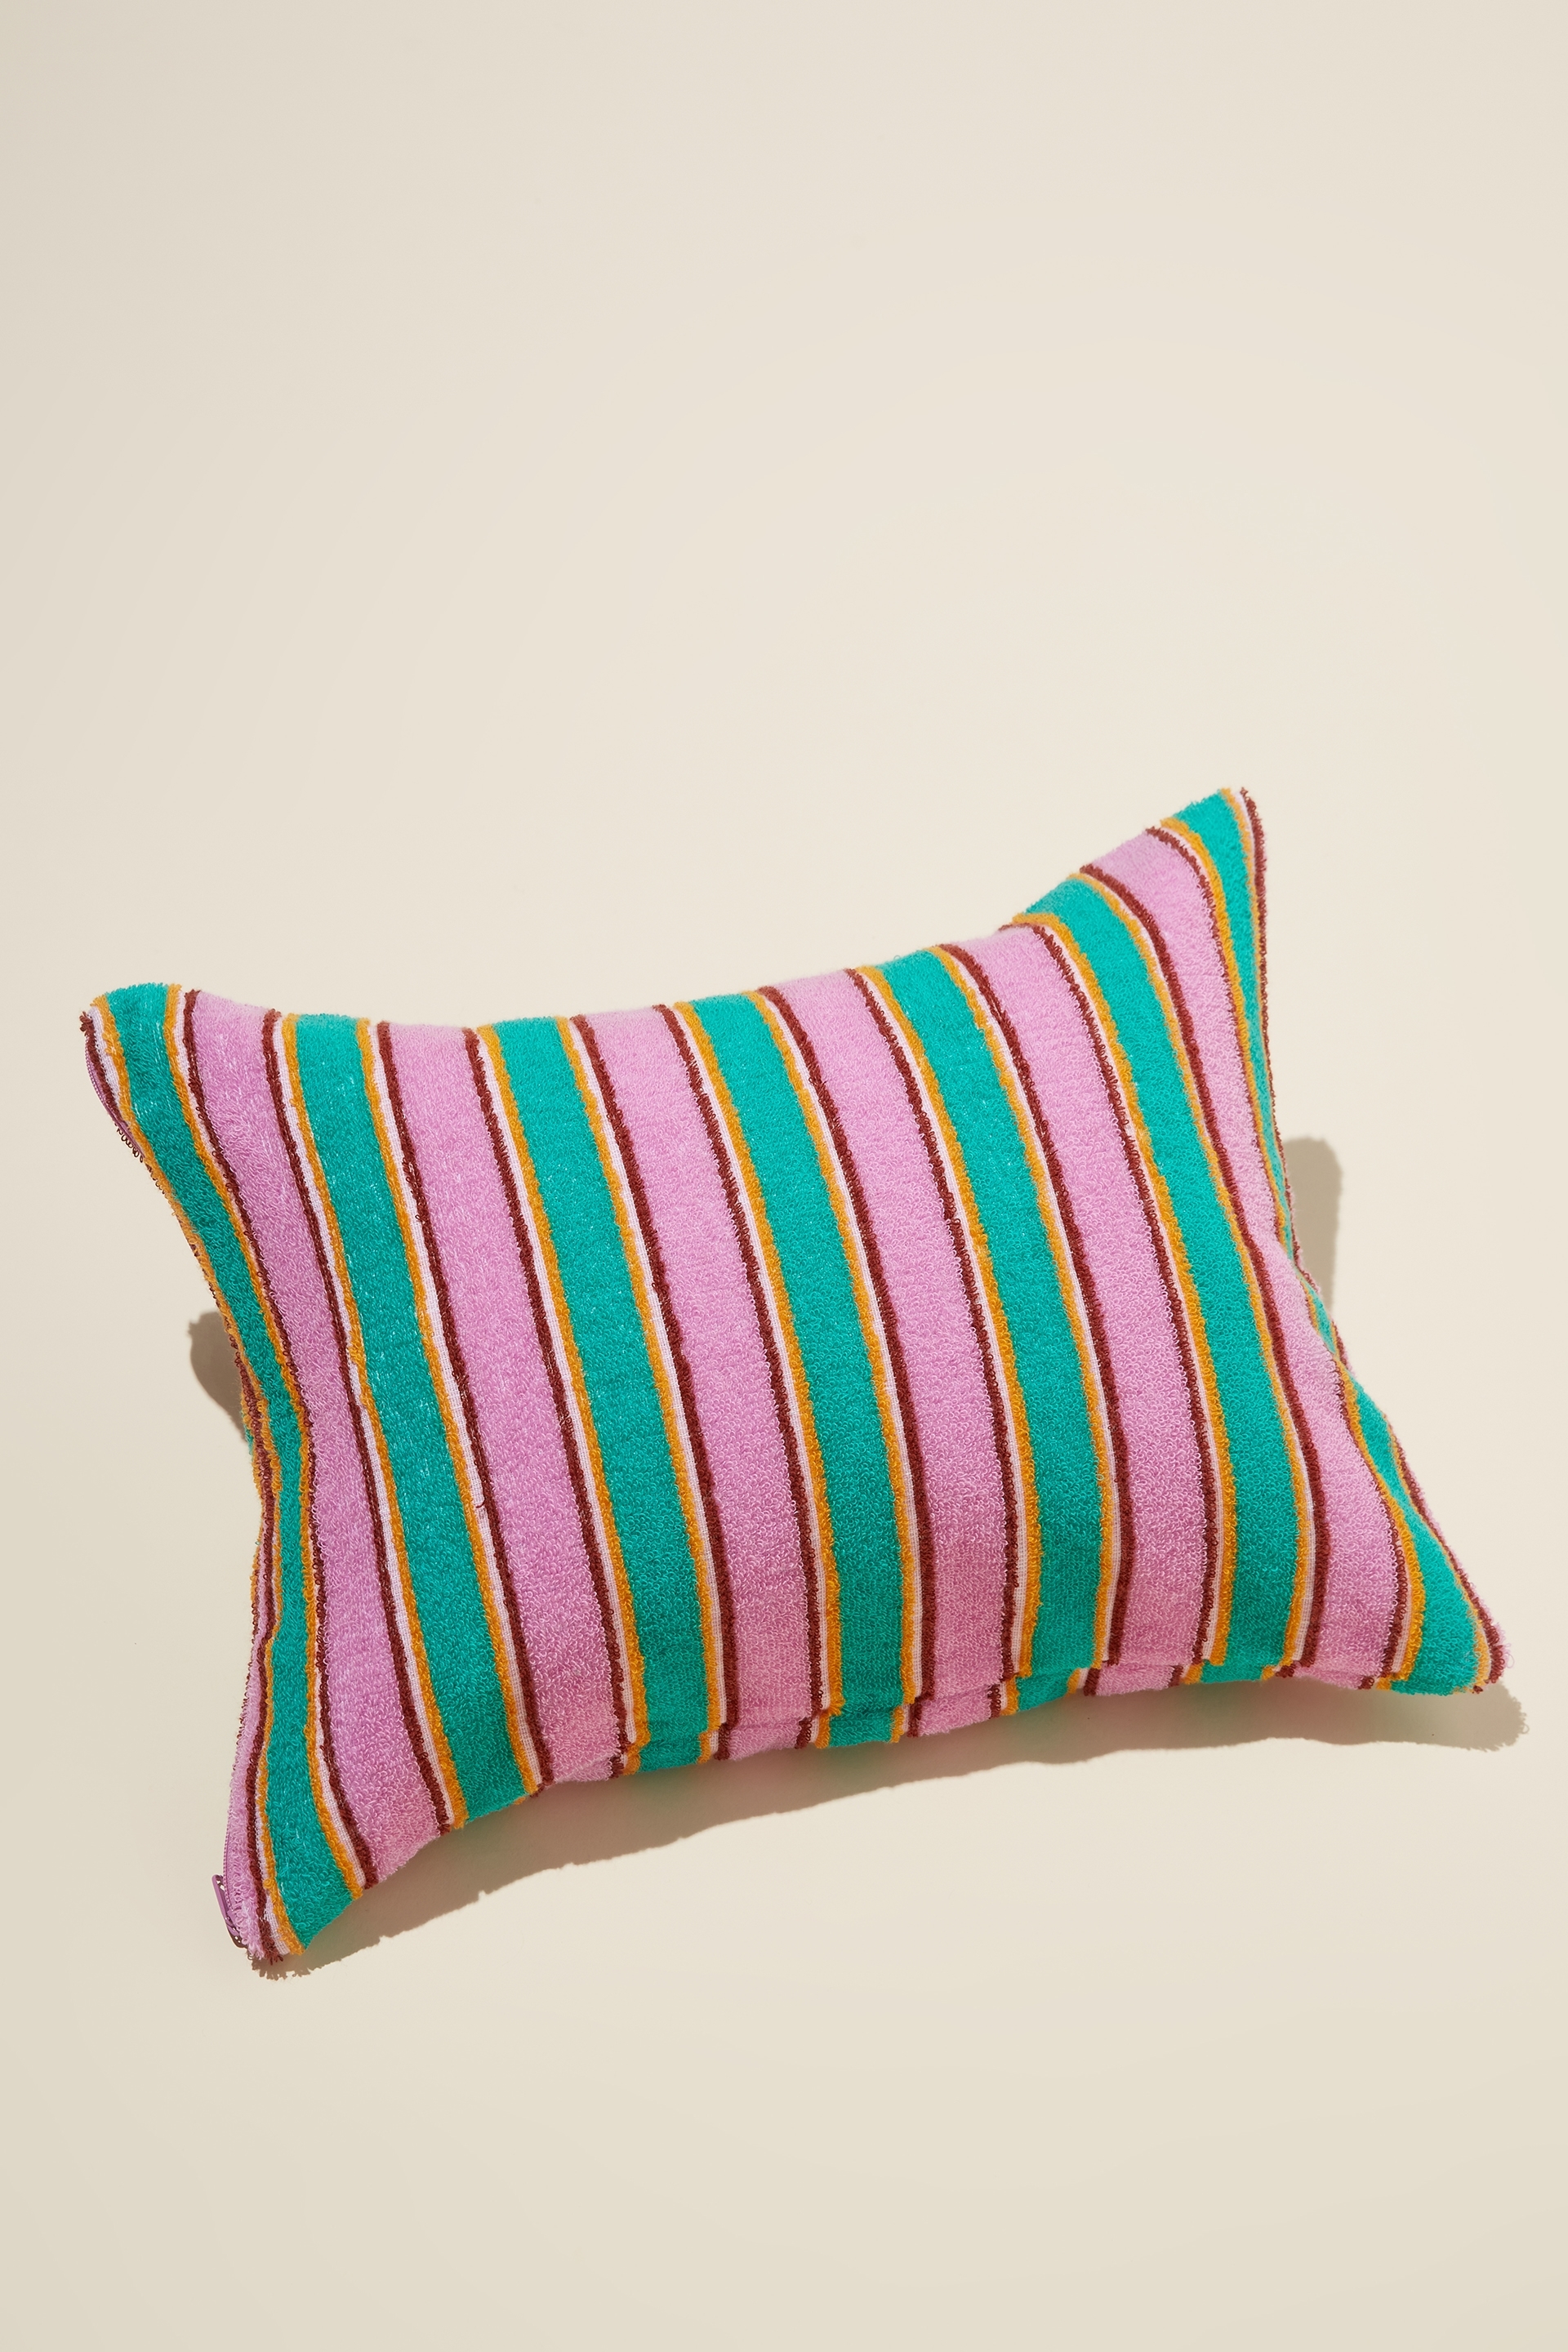 Rubi - Cotton Beach Pillow - Summer stripe emerald teal